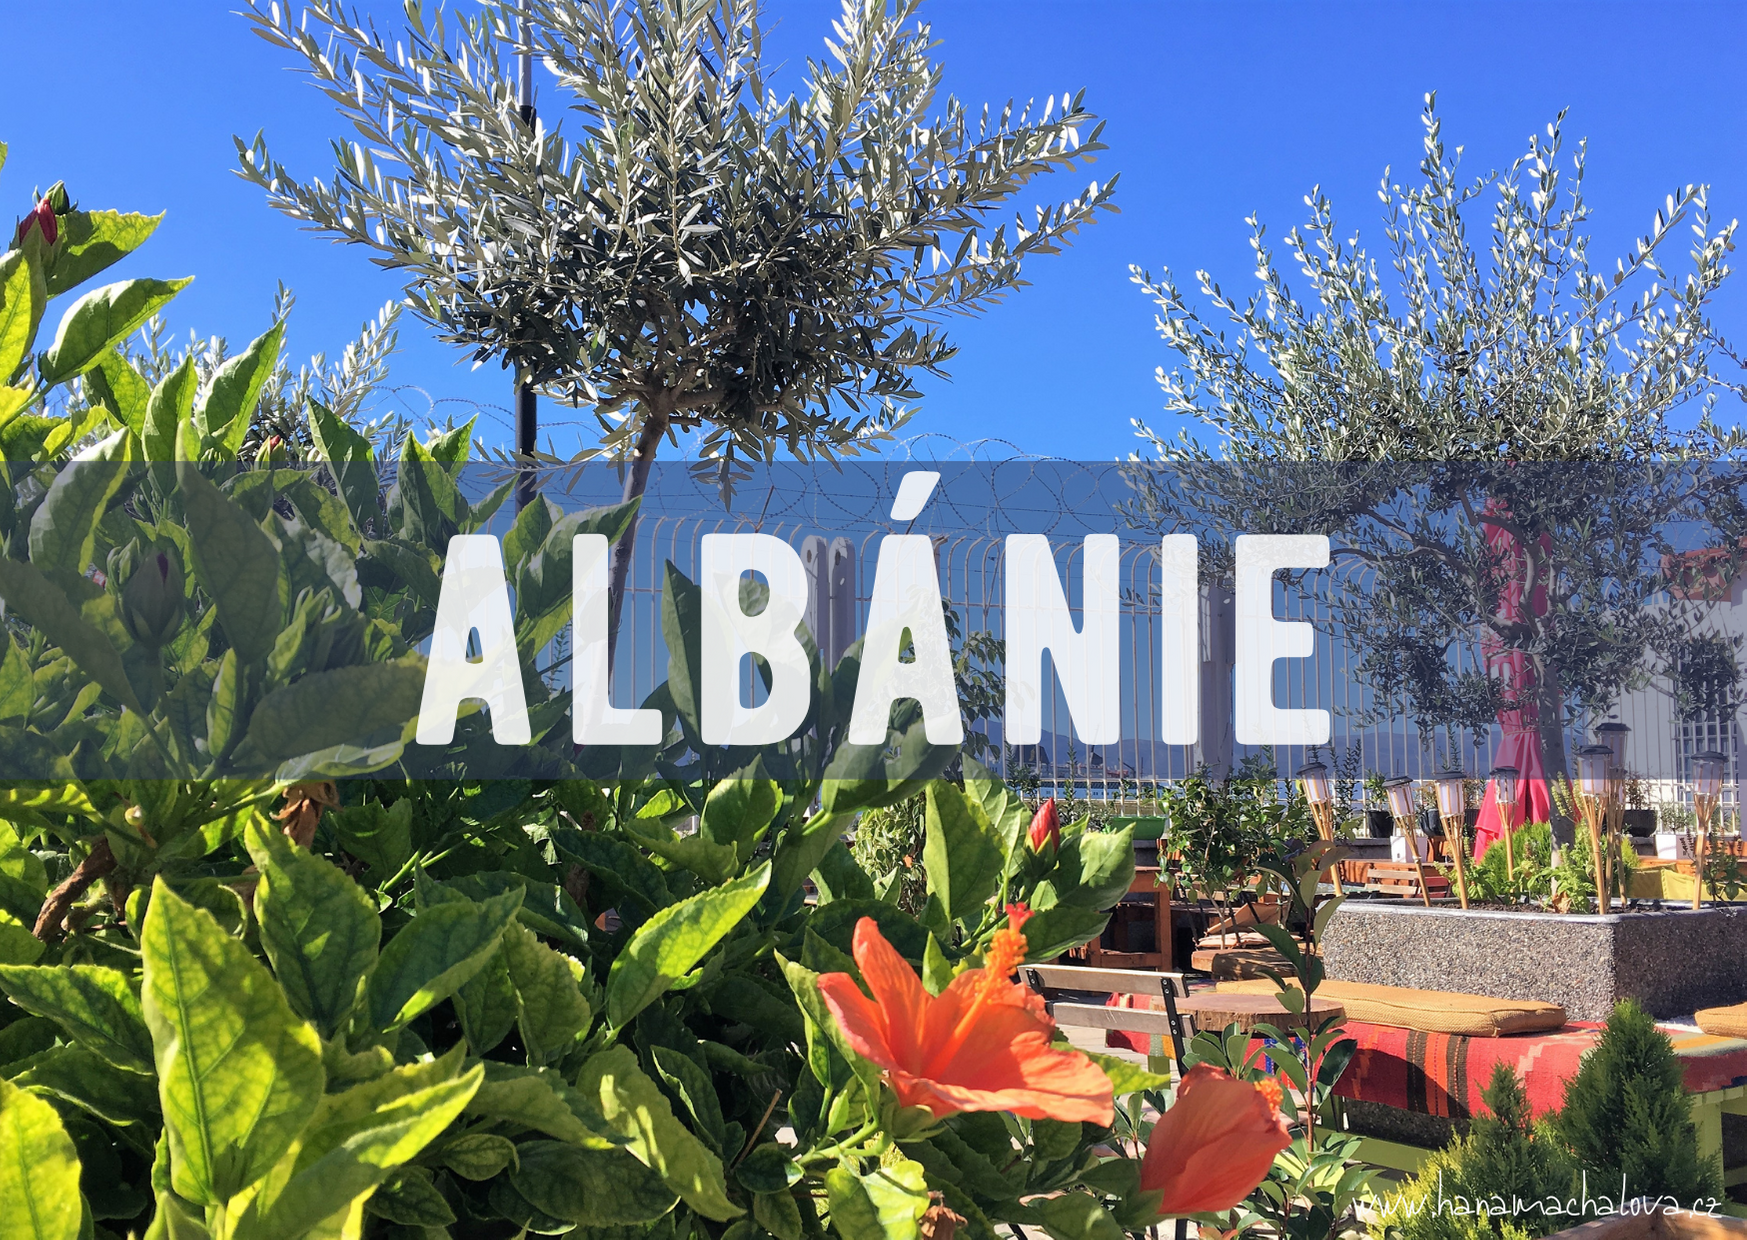 Objevte Albánii od horských vesnic po moře